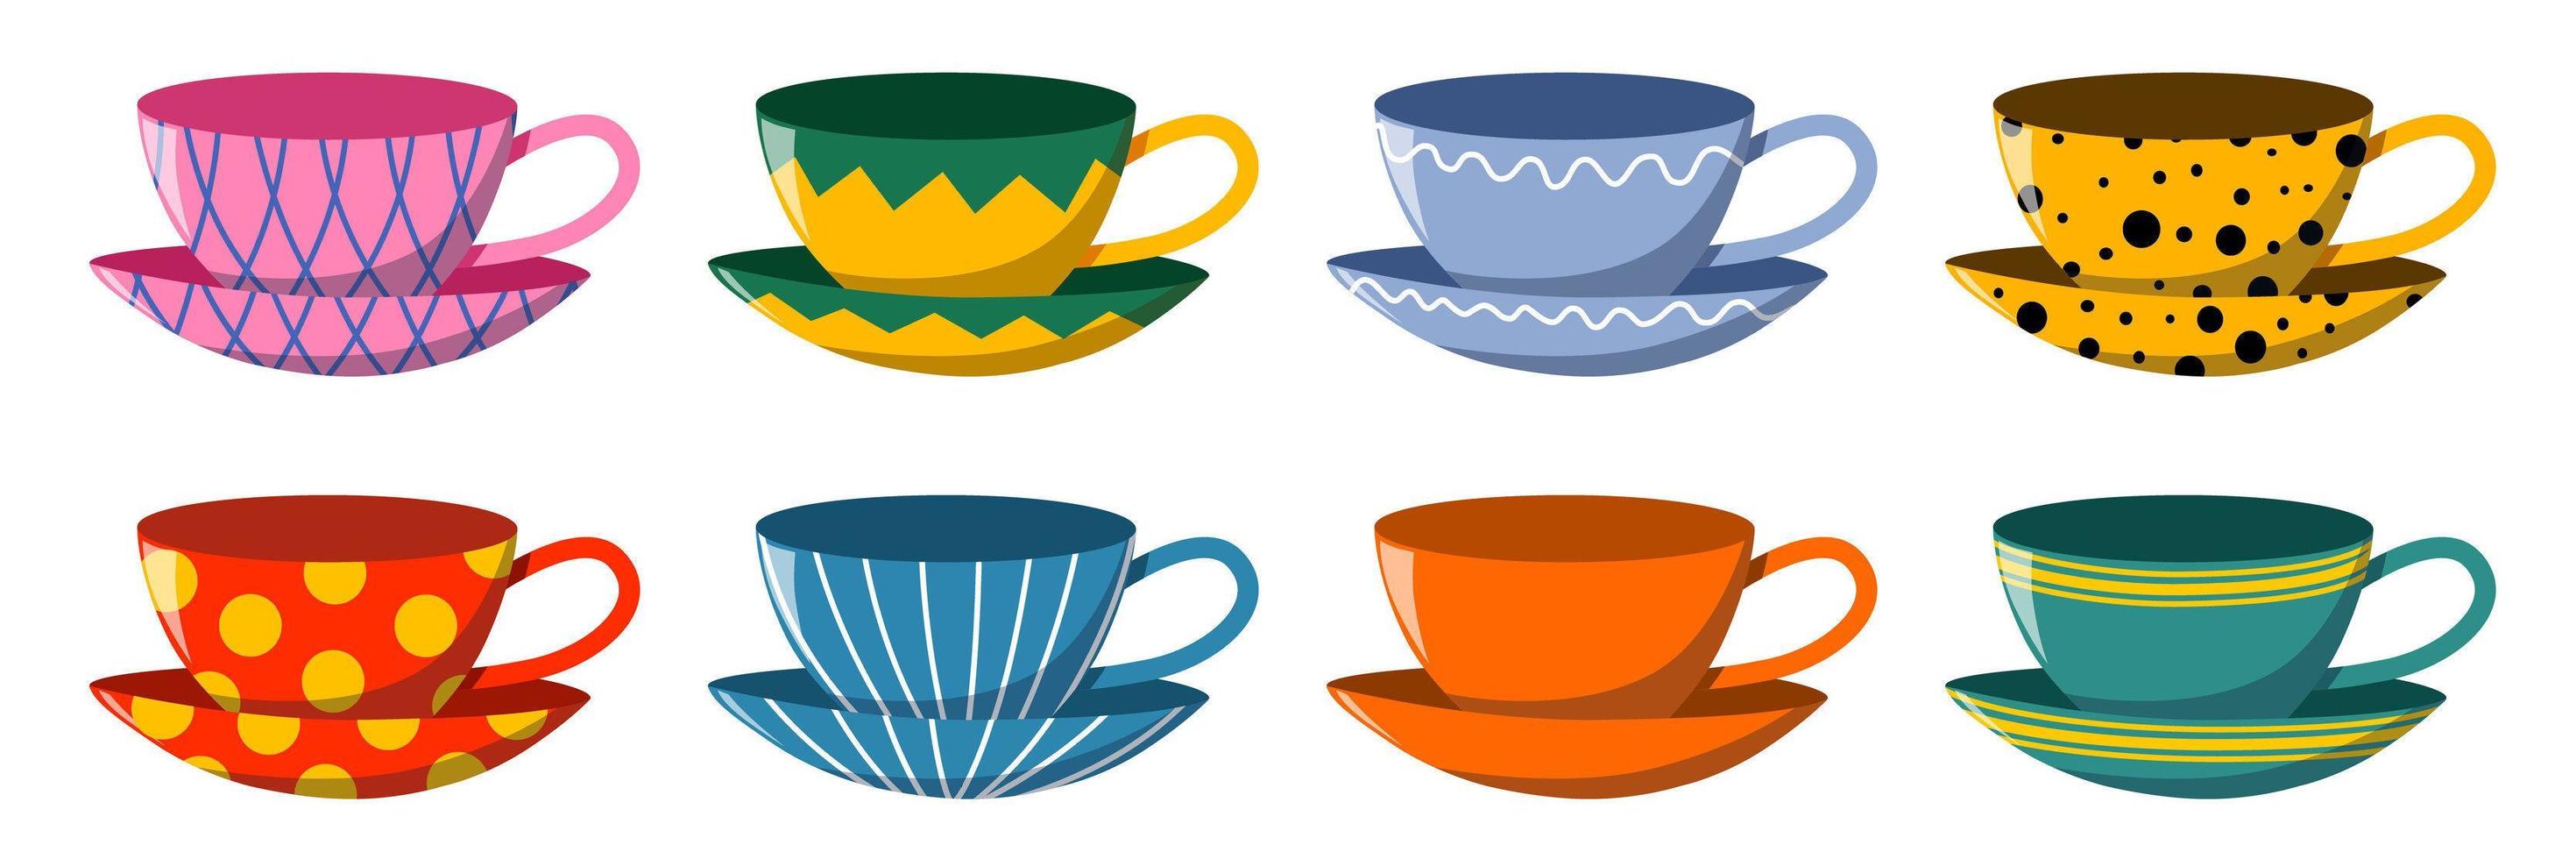 un brillante juego de vajilla de cerámica con un patrón. colección para beber té. vector